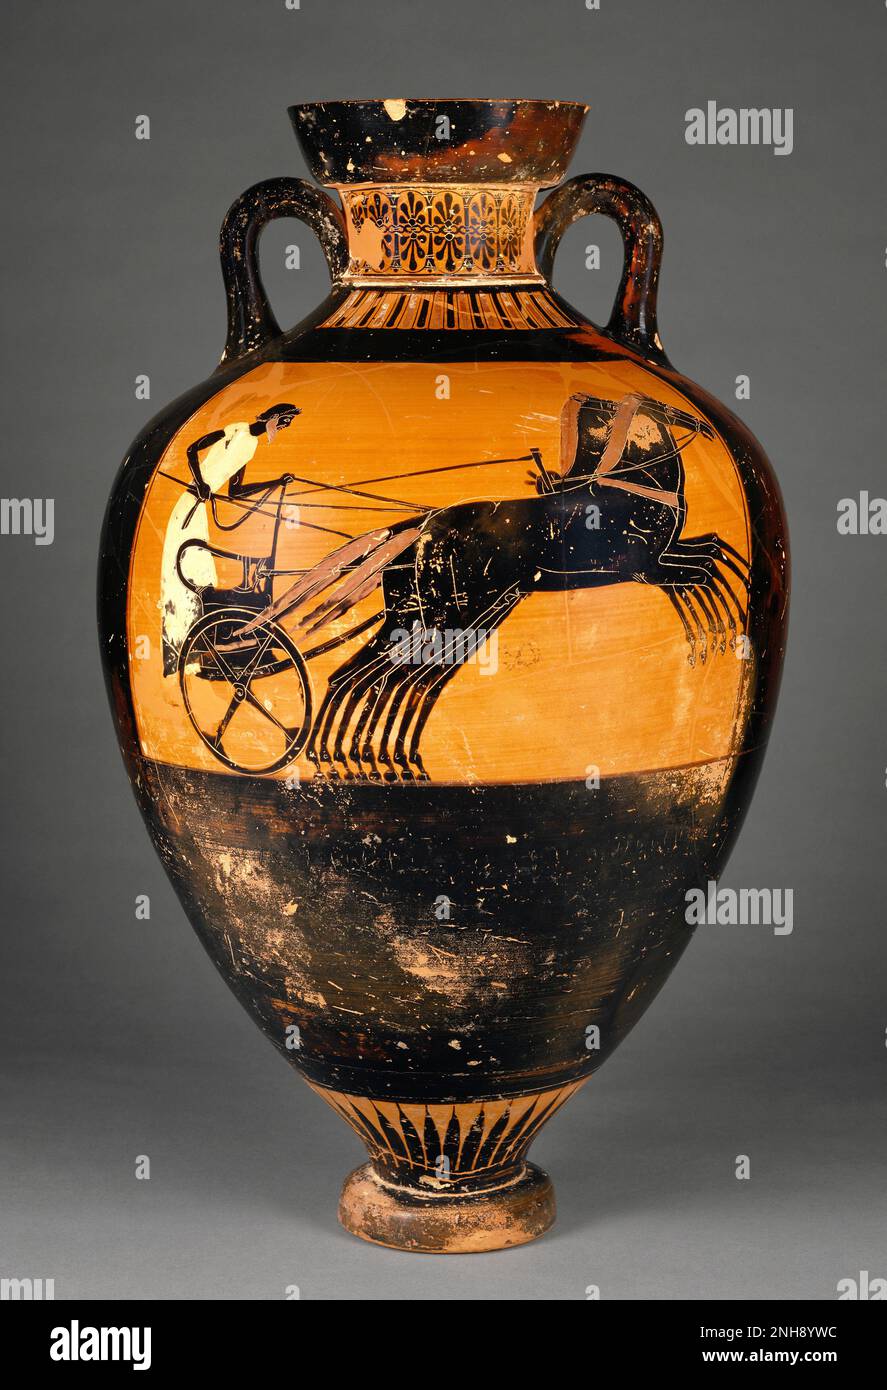 Mansarder Panathenaic Amphora, attribué à Kleophrades Painter (grec), vers 500-480 av. J.-C. Le Grand Panathenaia, un festival religieux d'État, a honoré Athéna, la déesse patronne d'Athènes. Organisé tous les quatre ans, le festival comprenait des compétitions sportives et musicales, et des amphores comme celui-ci remplis d'huile des oliviers sacrés d'Athéna ont été remis en prix. Cette amphore a été décernée au gagnant de la course de quatre chevaux-chars représentée sur elle. Banque D'Images